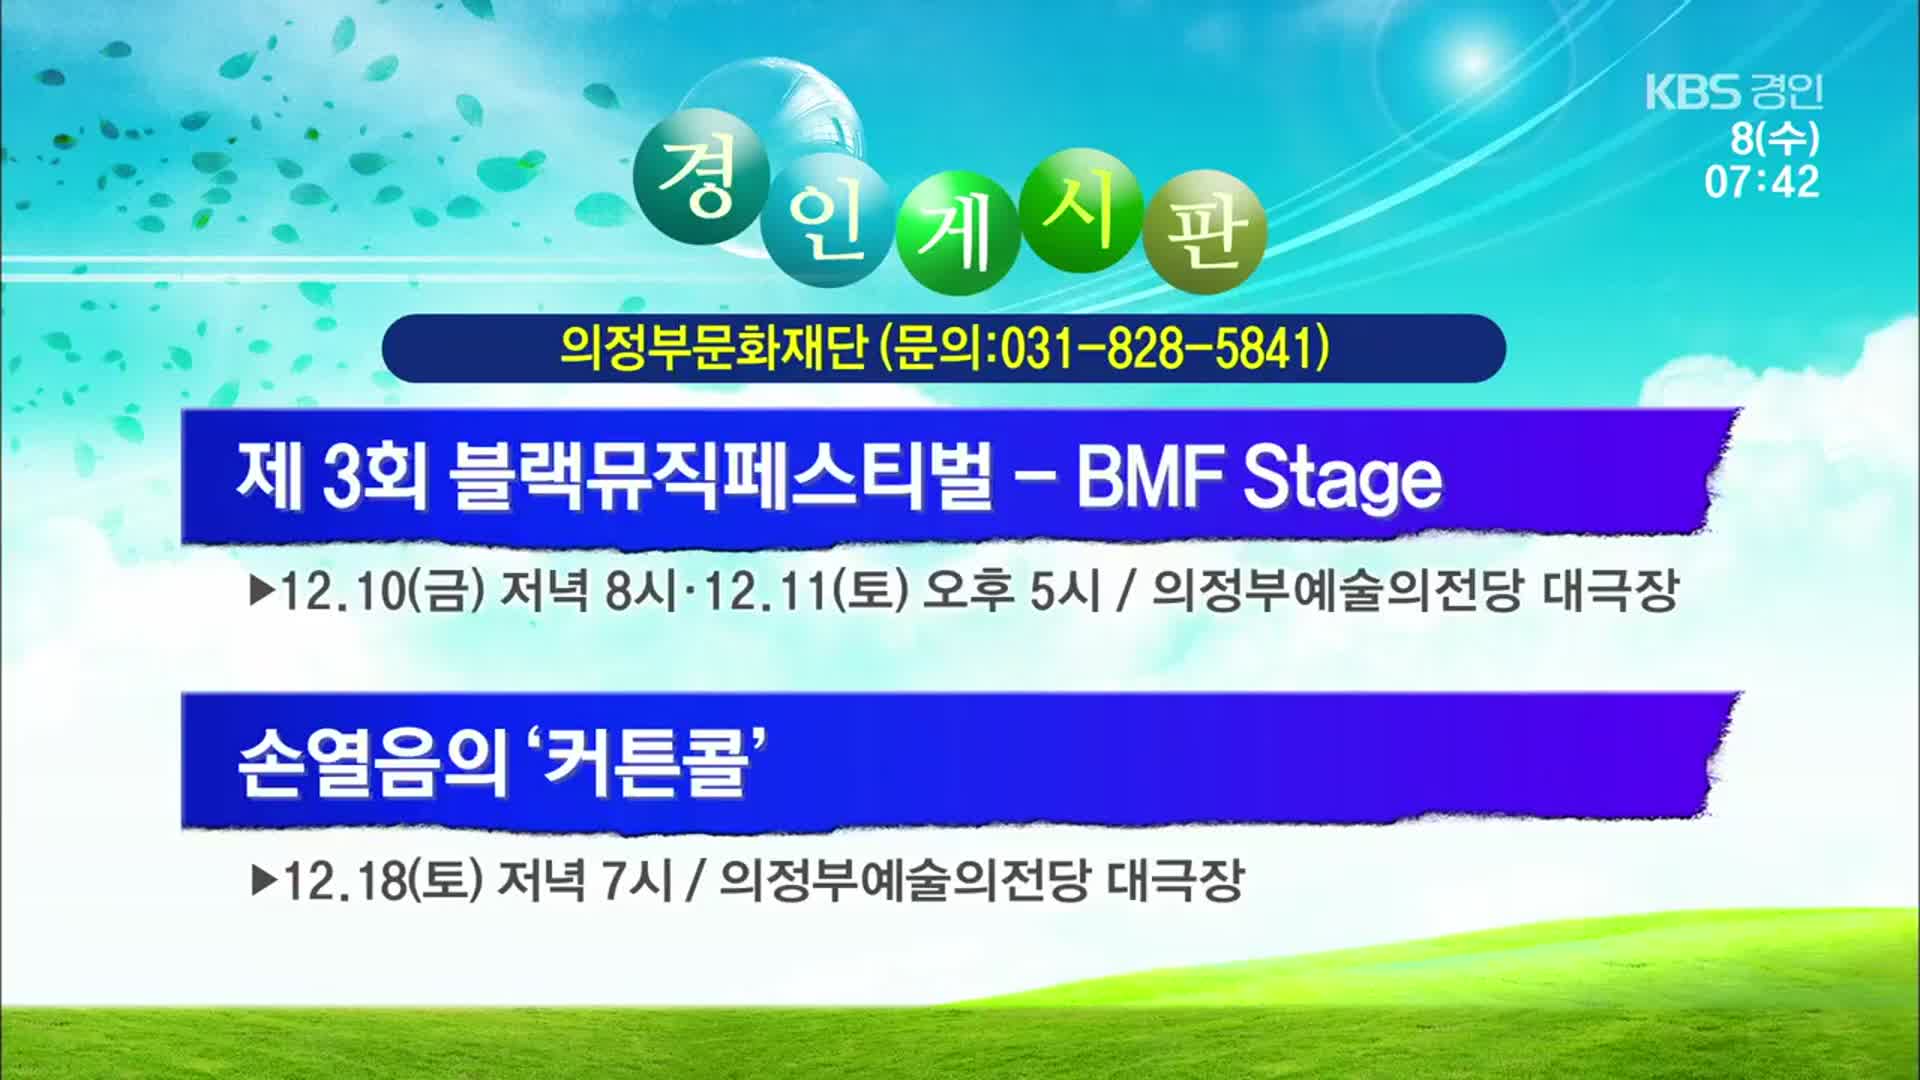 [경인 게시판] 제3회 블랙뮤직페스티벌 - BMF Stage 외